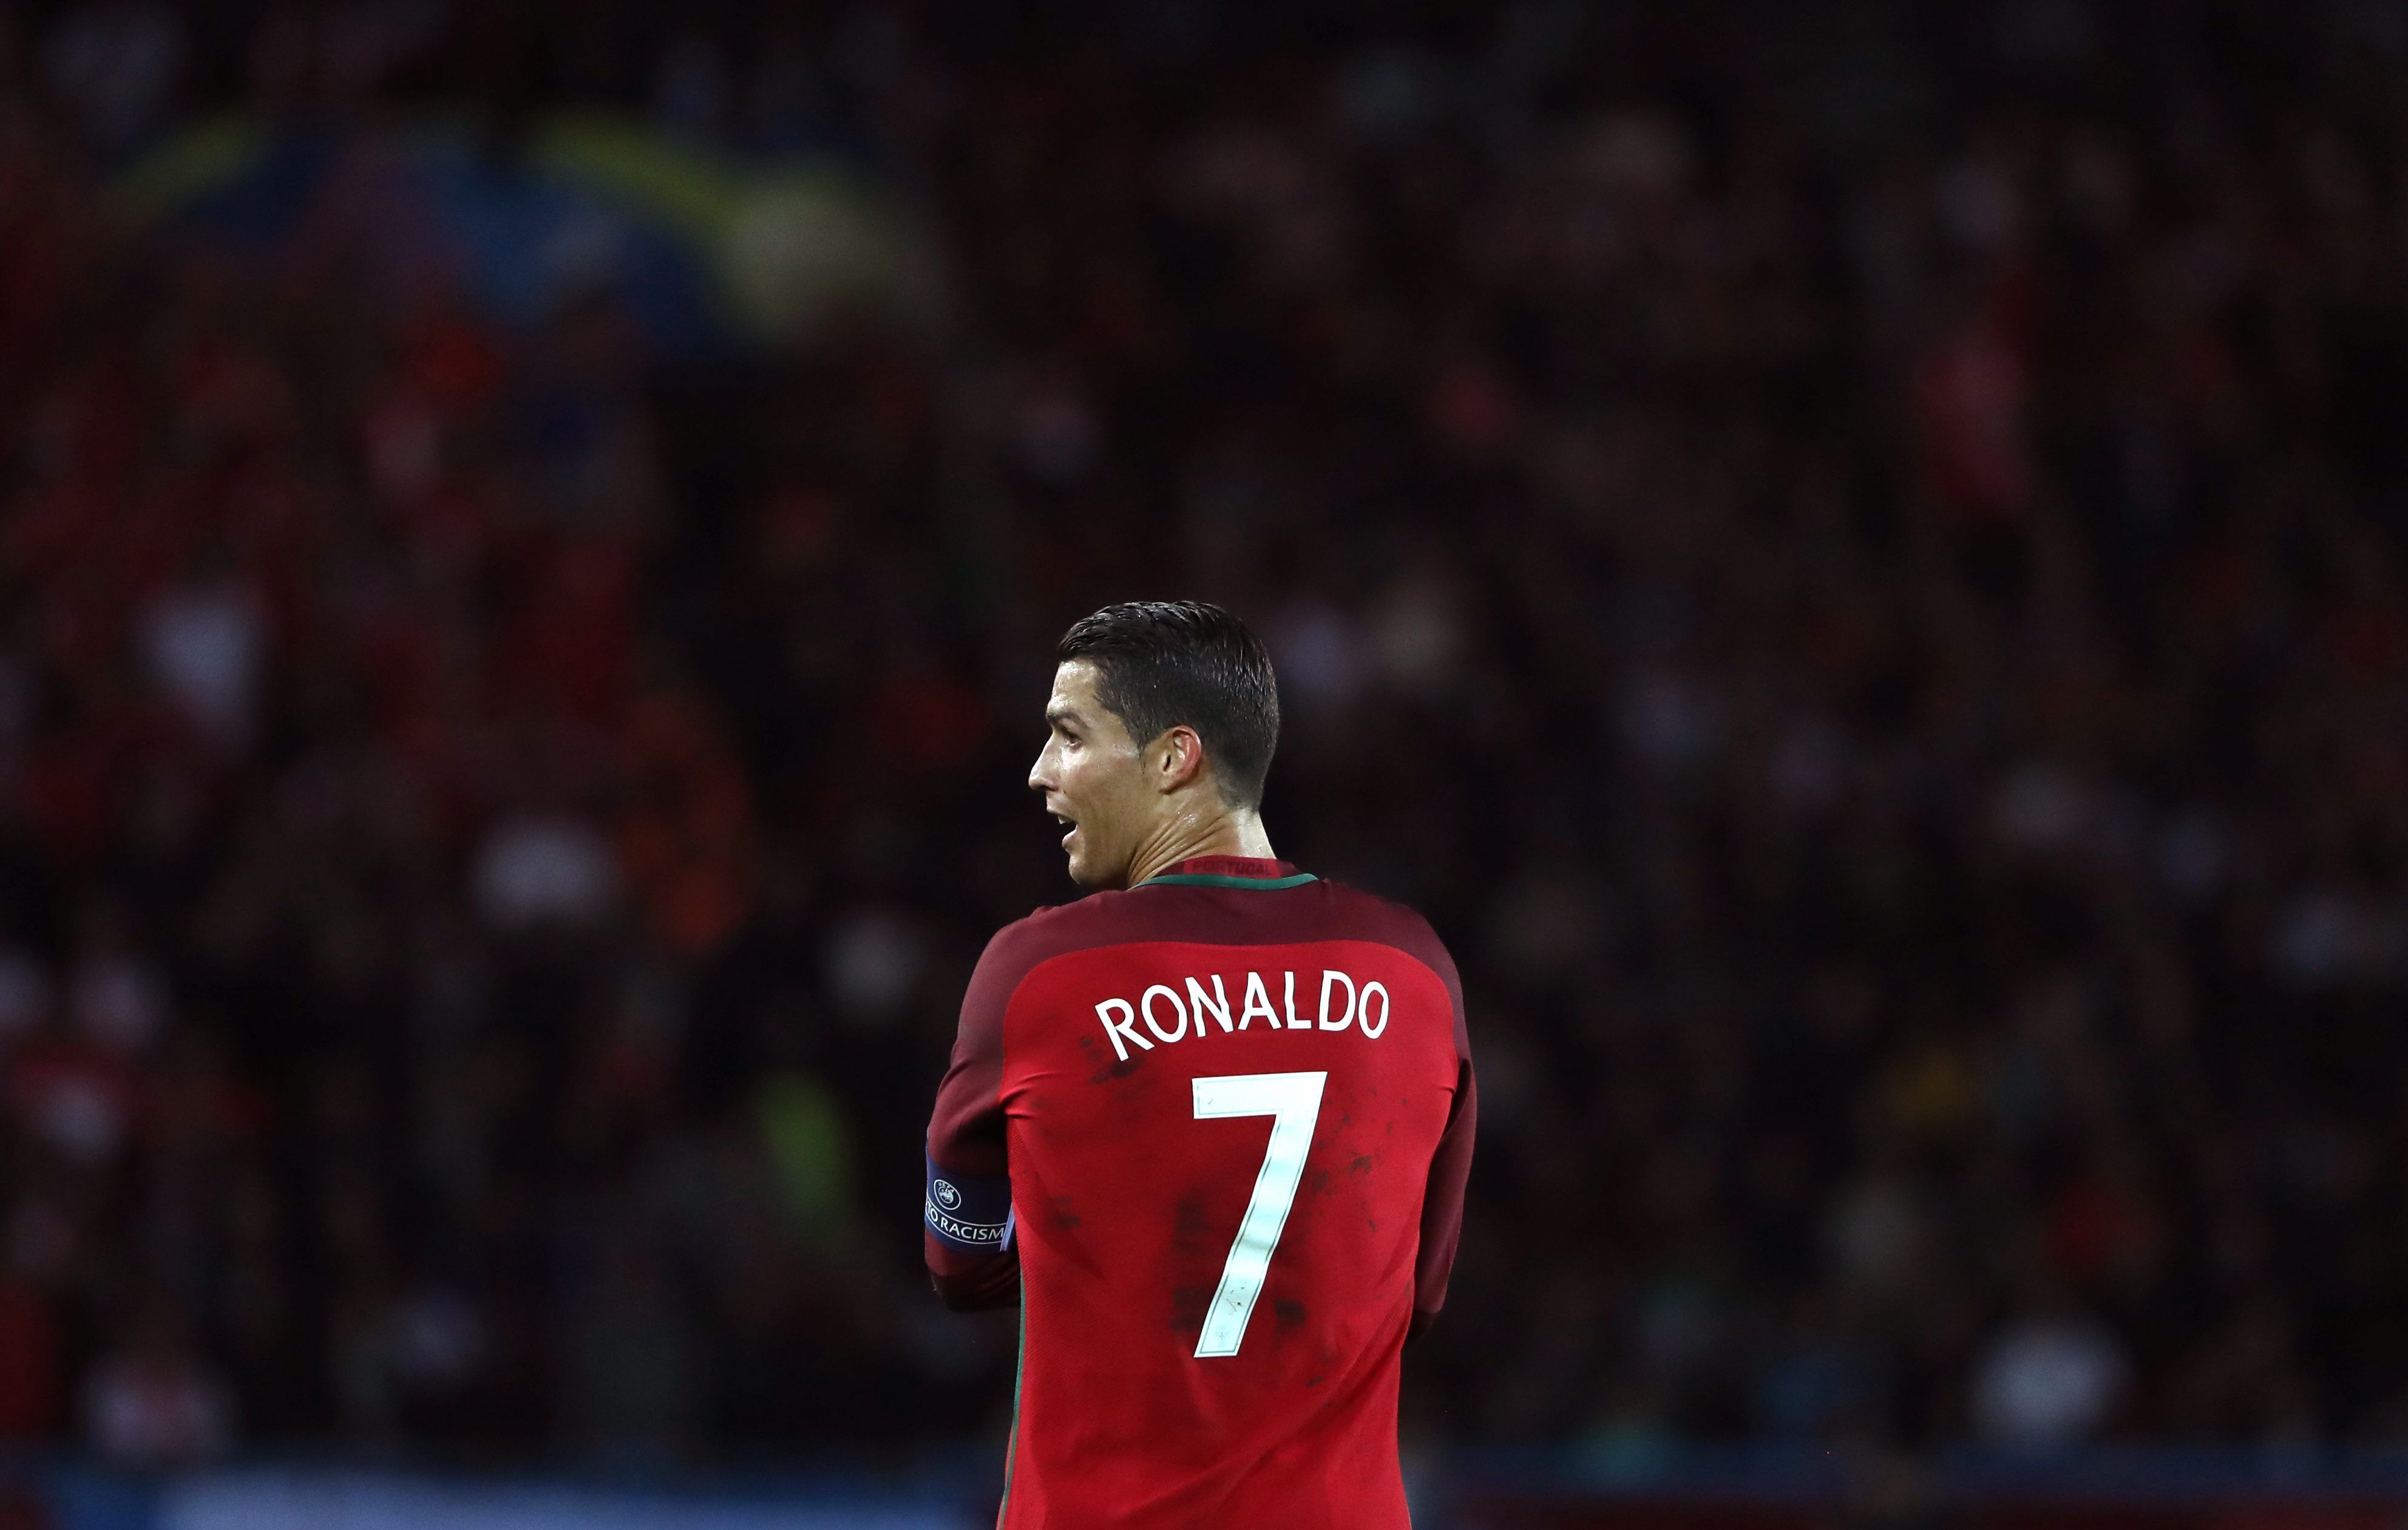 La premsa portuguesa sobre Ronaldo: "No marca ni de penal"